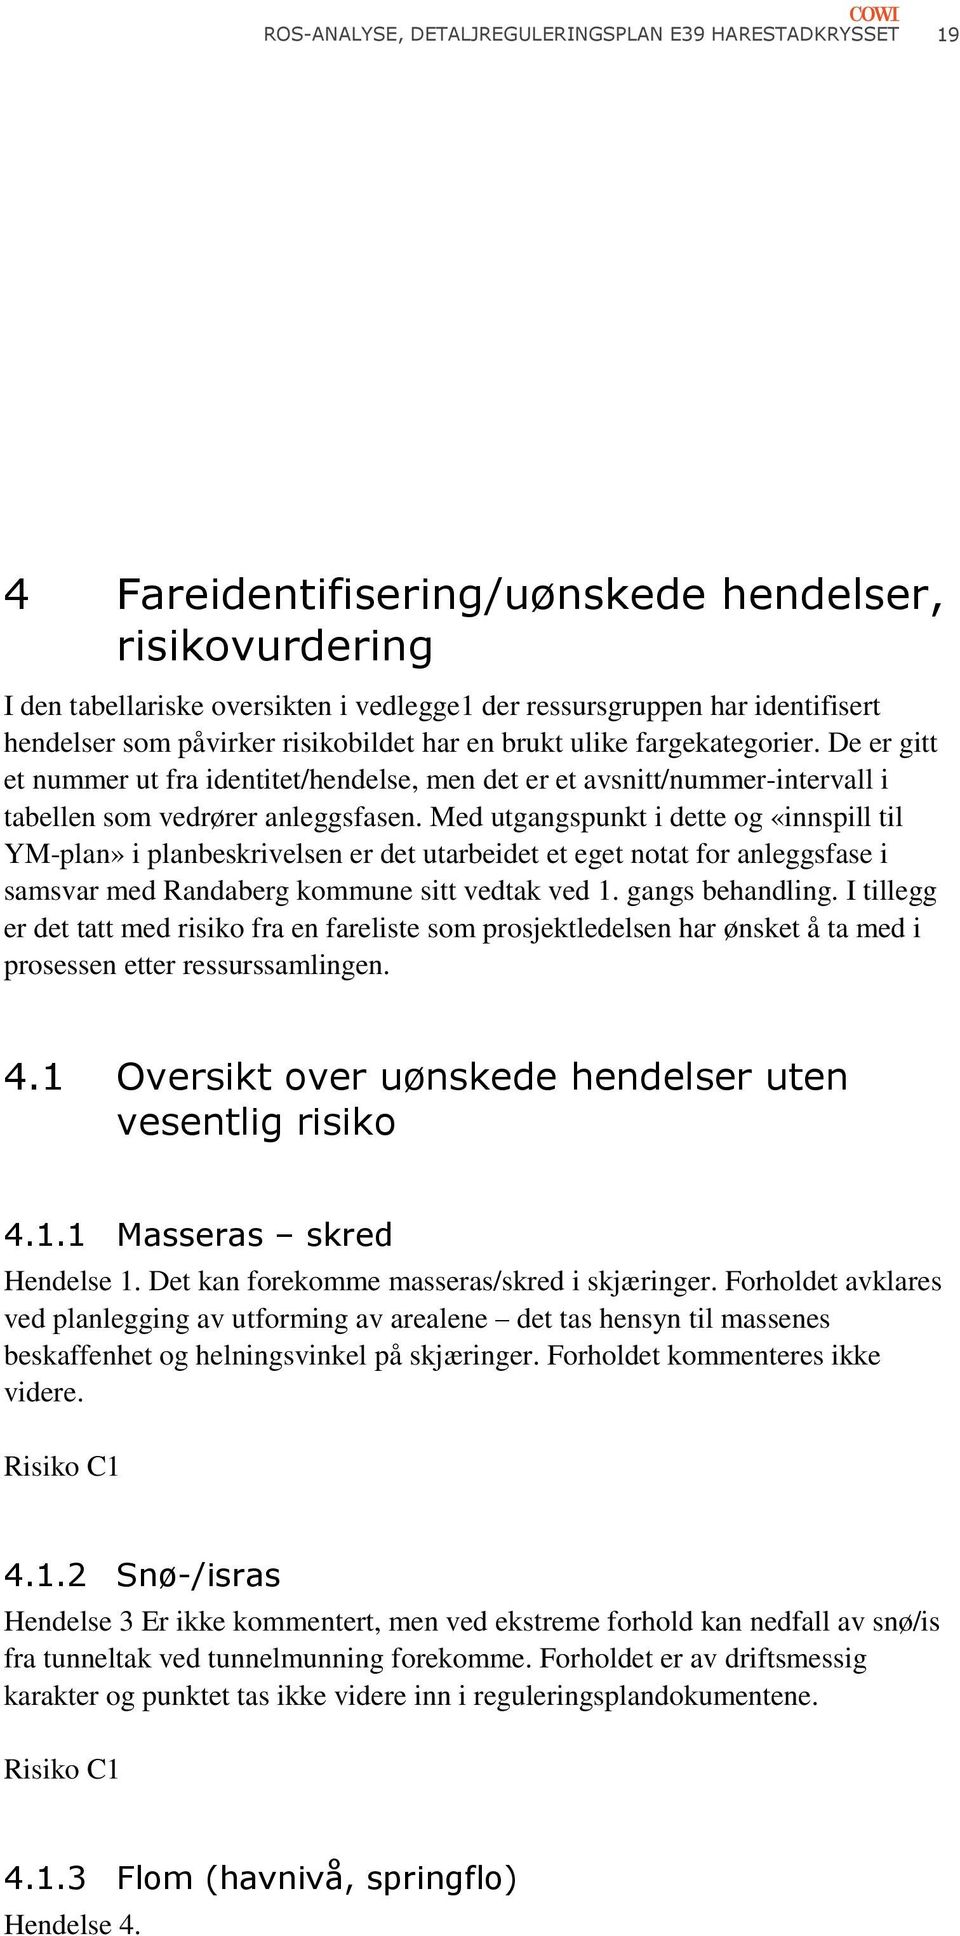 Med utgangspunkt i dette og «innspill til YM-plan» i planbeskrivelsen er det utarbeidet et eget notat for anleggsfase i samsvar med Randaberg kommune sitt vedtak ved 1. gangs behandling.